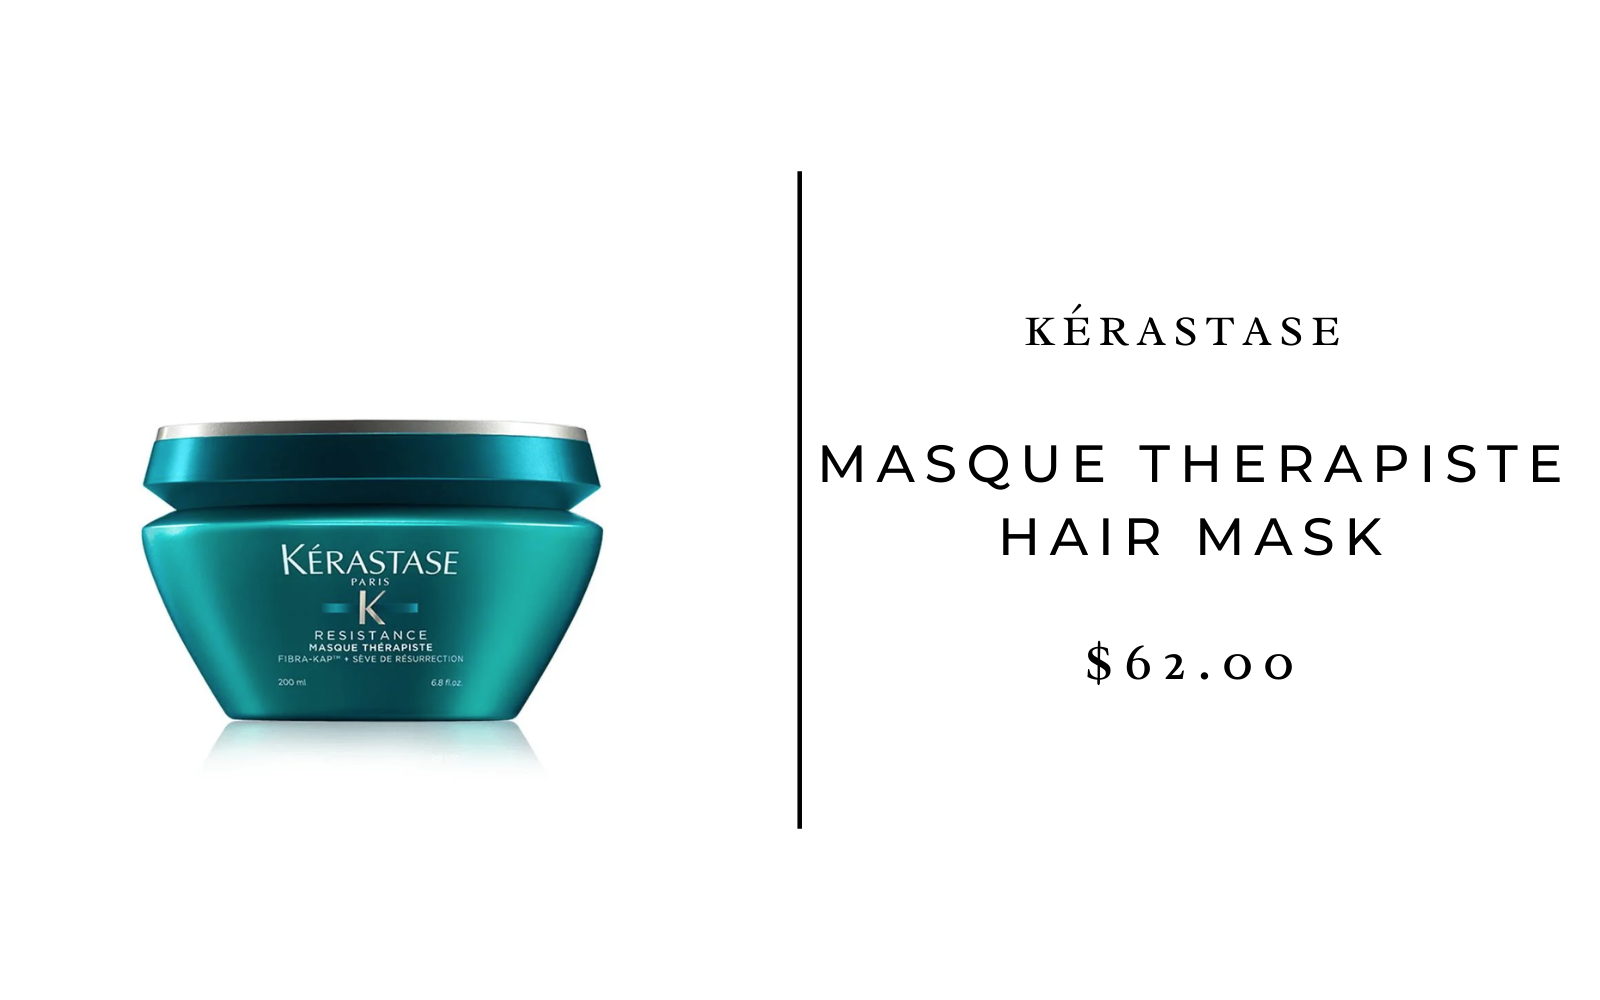 Kerastase Masque Therapiste Hair Mask